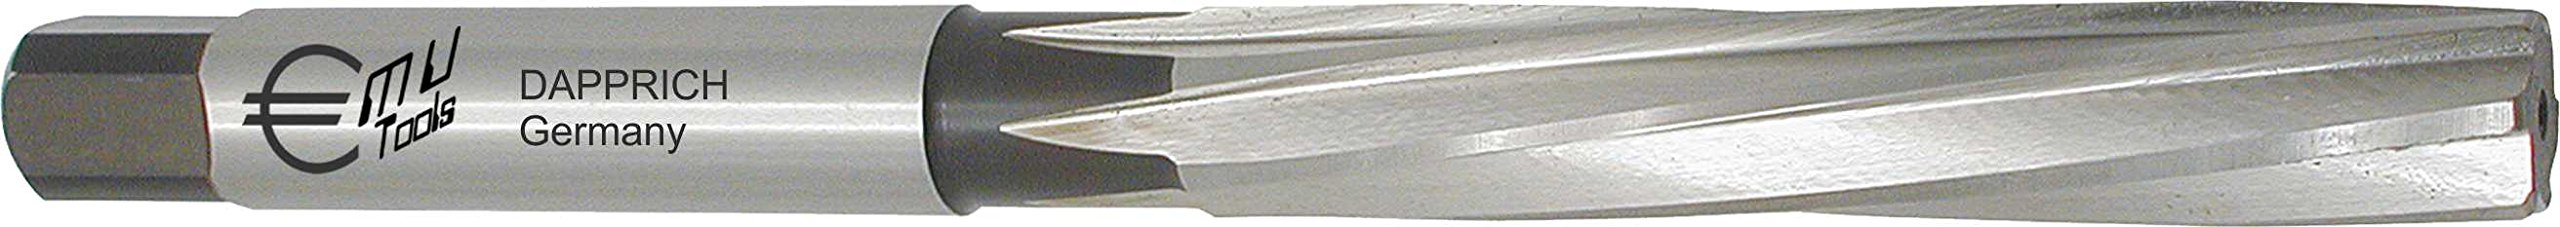 HSS Hand Reibahle, DIN 206 B, Profi Ausführung, spiralgenutet, mit Zylinderschaft und Vierkant DIN 10: Ø 7,25 mm H7